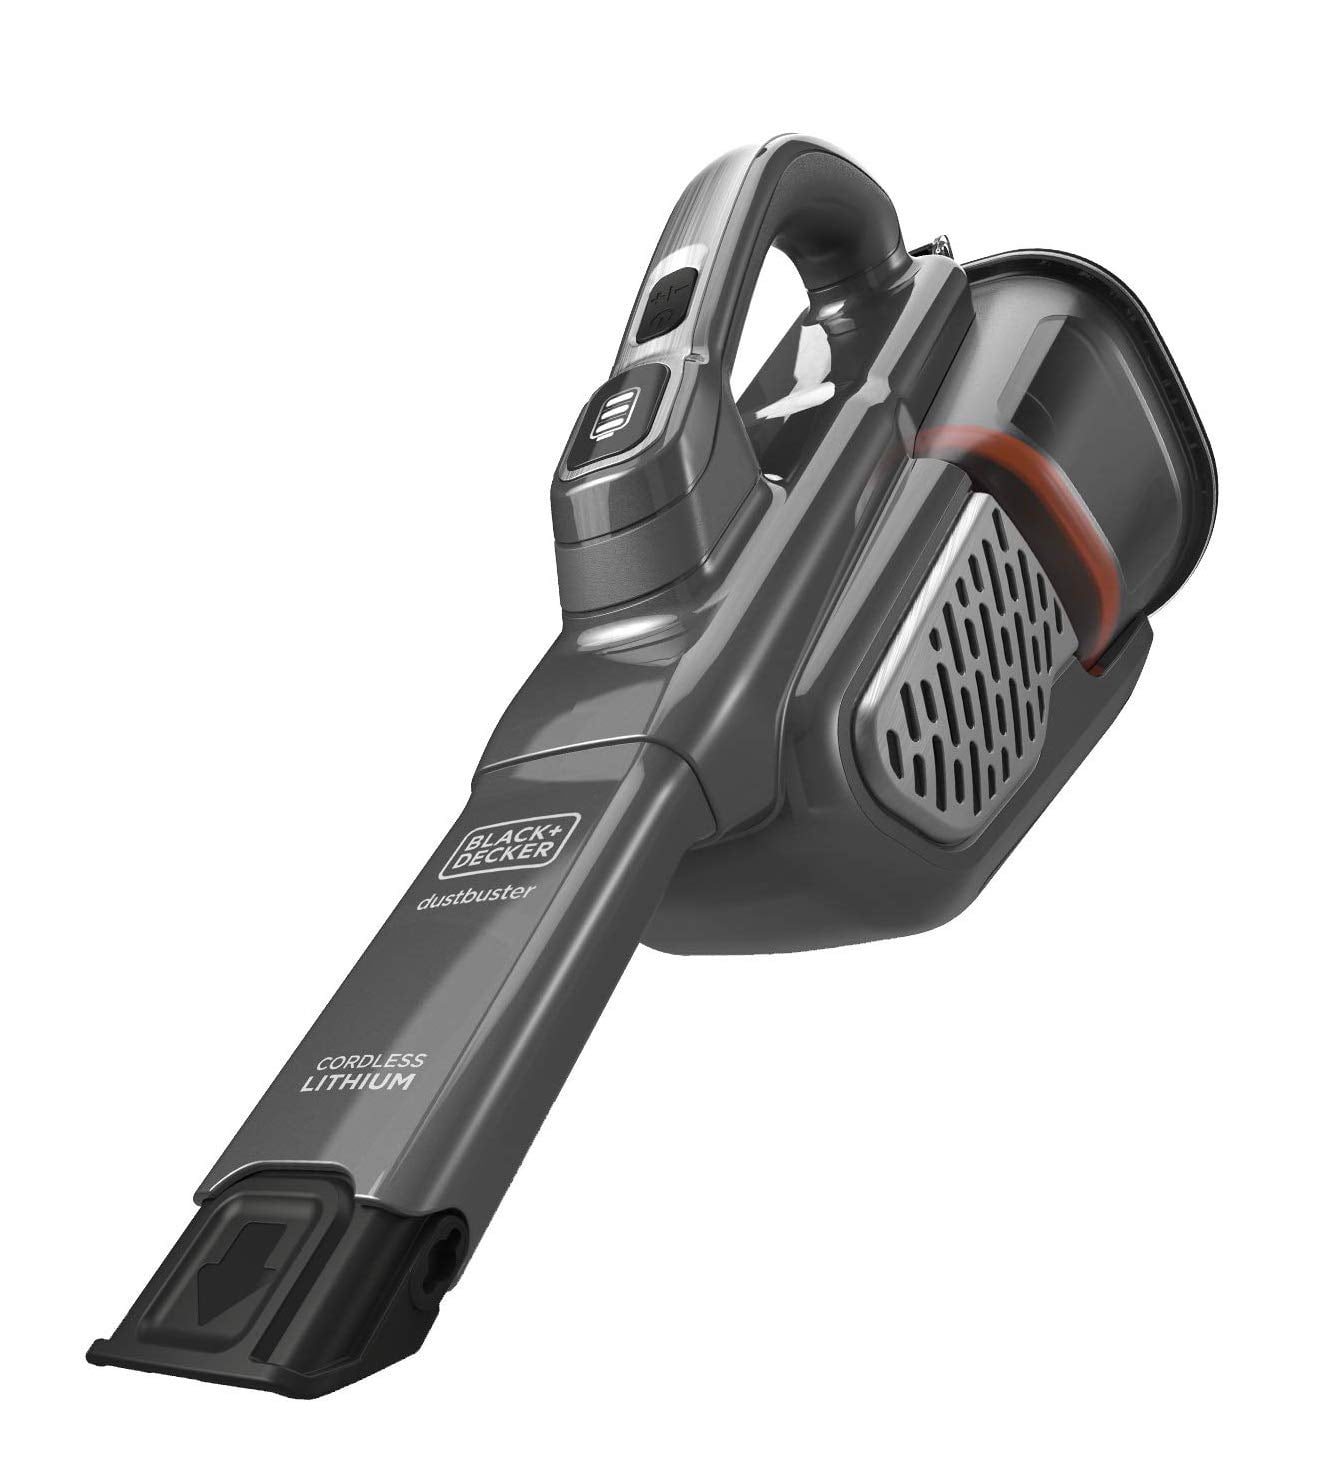 BLACK+DECKER® spillbuster™ Cordless Hand Vacuum at Menards®